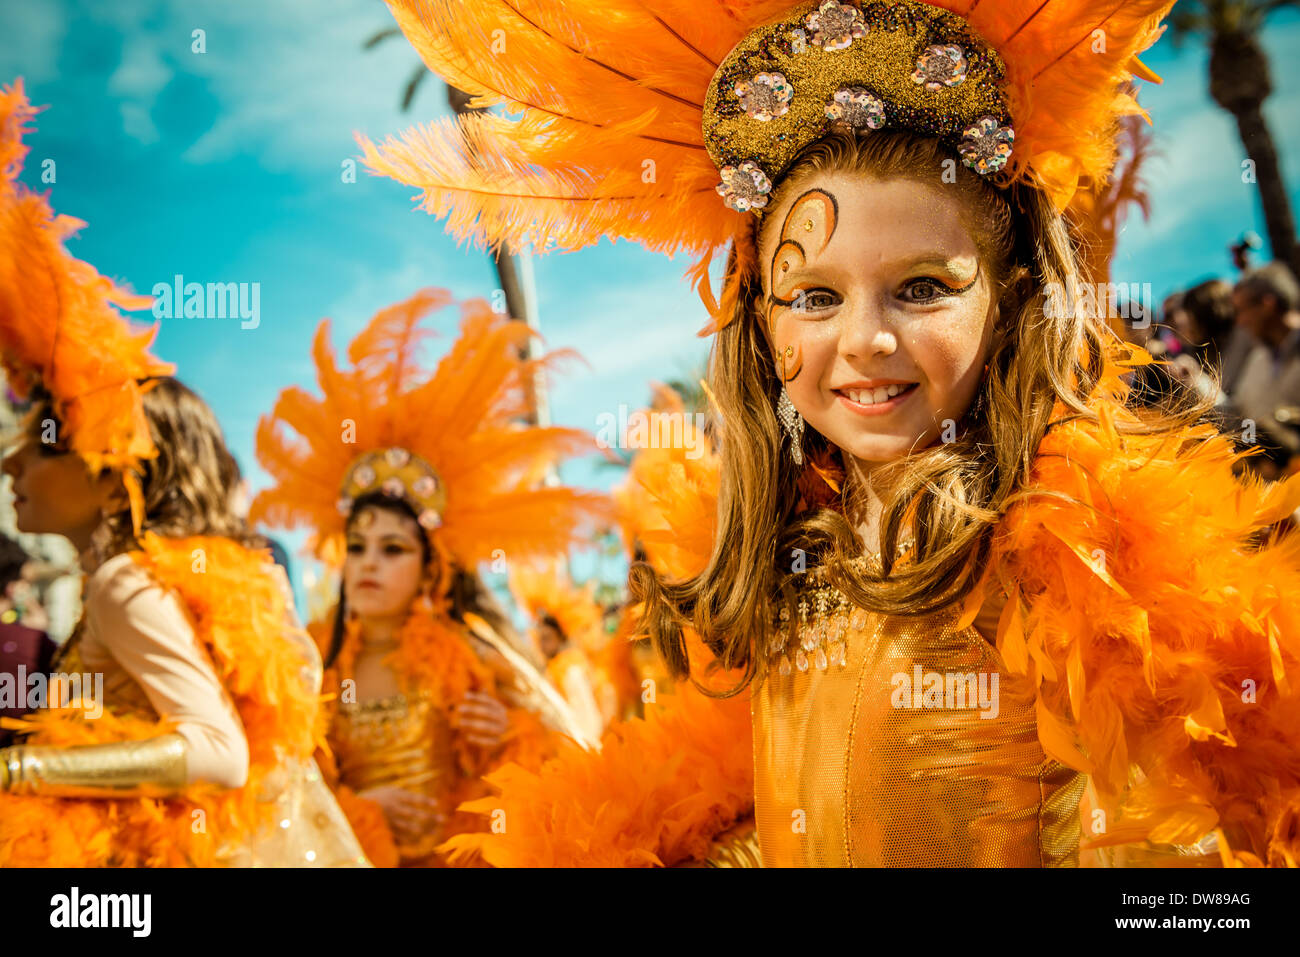 Sitges, España. Marzo 2nd, 2014: Niños juerguistas bailan durante el desfile del Domingo de los niños desfile de carnaval en Sitges: Crédito matthi/Alamy Live News Foto de stock